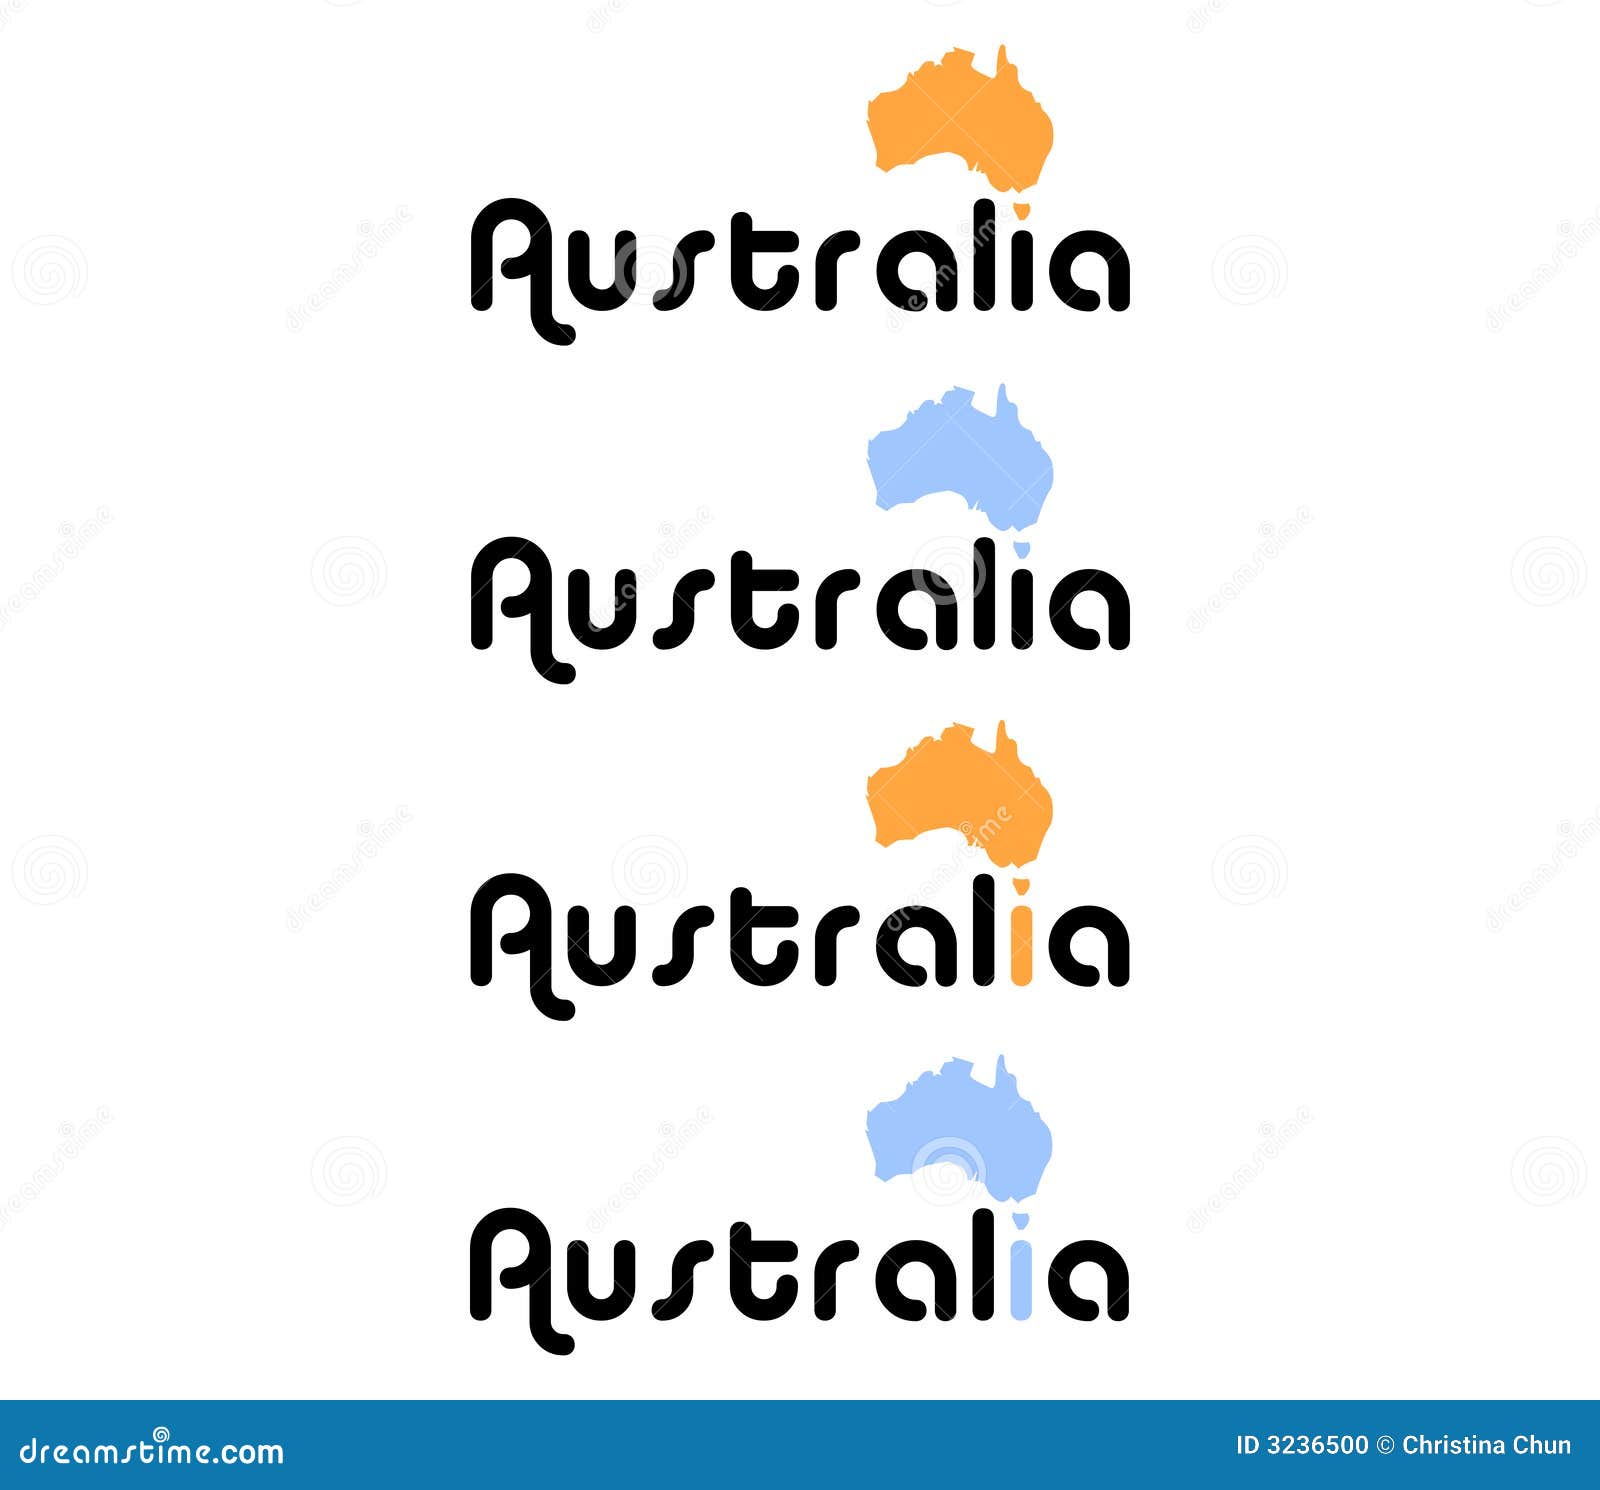 Abbildung des Landes Australien zusammen mit seinem Namen.